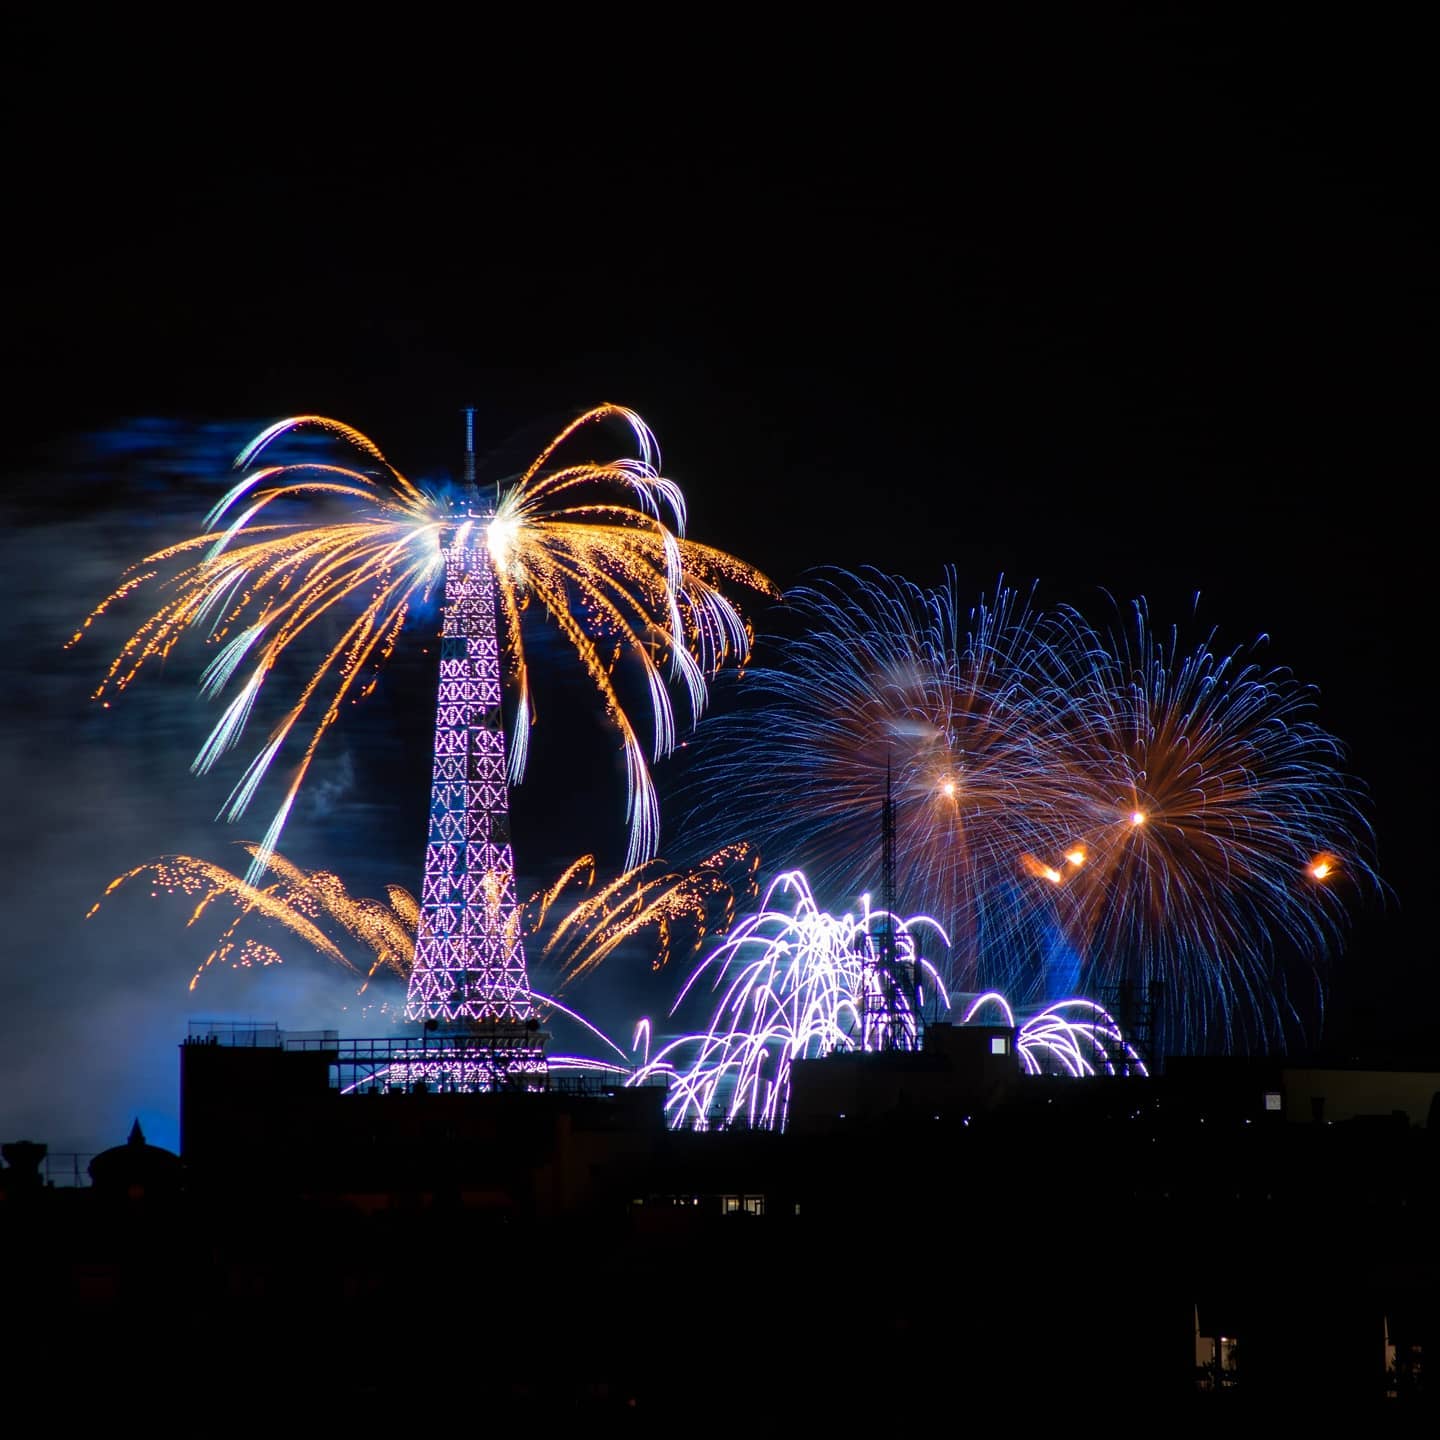 Le feu d'artifice du 14 Juillet à Paris! Toujours de ma fenêtre :)
.
.
.
#Bastilleday #fireworks #paris #parisjetaime #parisiloveyou #14juillet #feudartifice